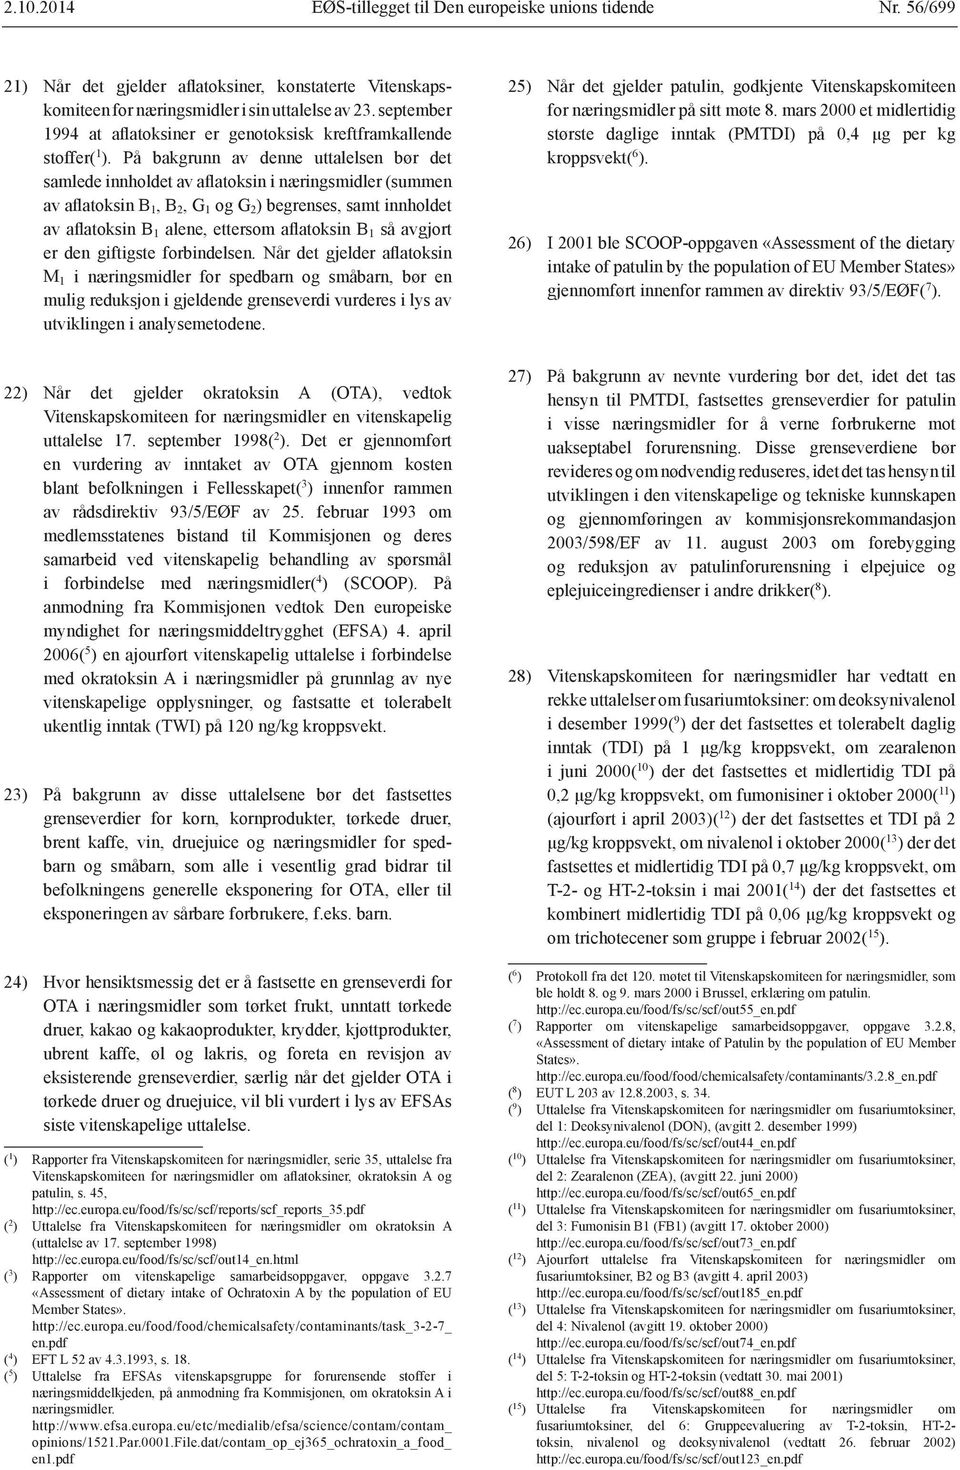 mars 2000 et midlertidig kroppsvekt( 6 ). 26) I 2001 ble SCOOP-oppgaven «Assessment of the dietary gjennomført innenfor rammen av direktiv 93/5/EØF( 7 ). uttalelse 17. september 1998( 2 ).